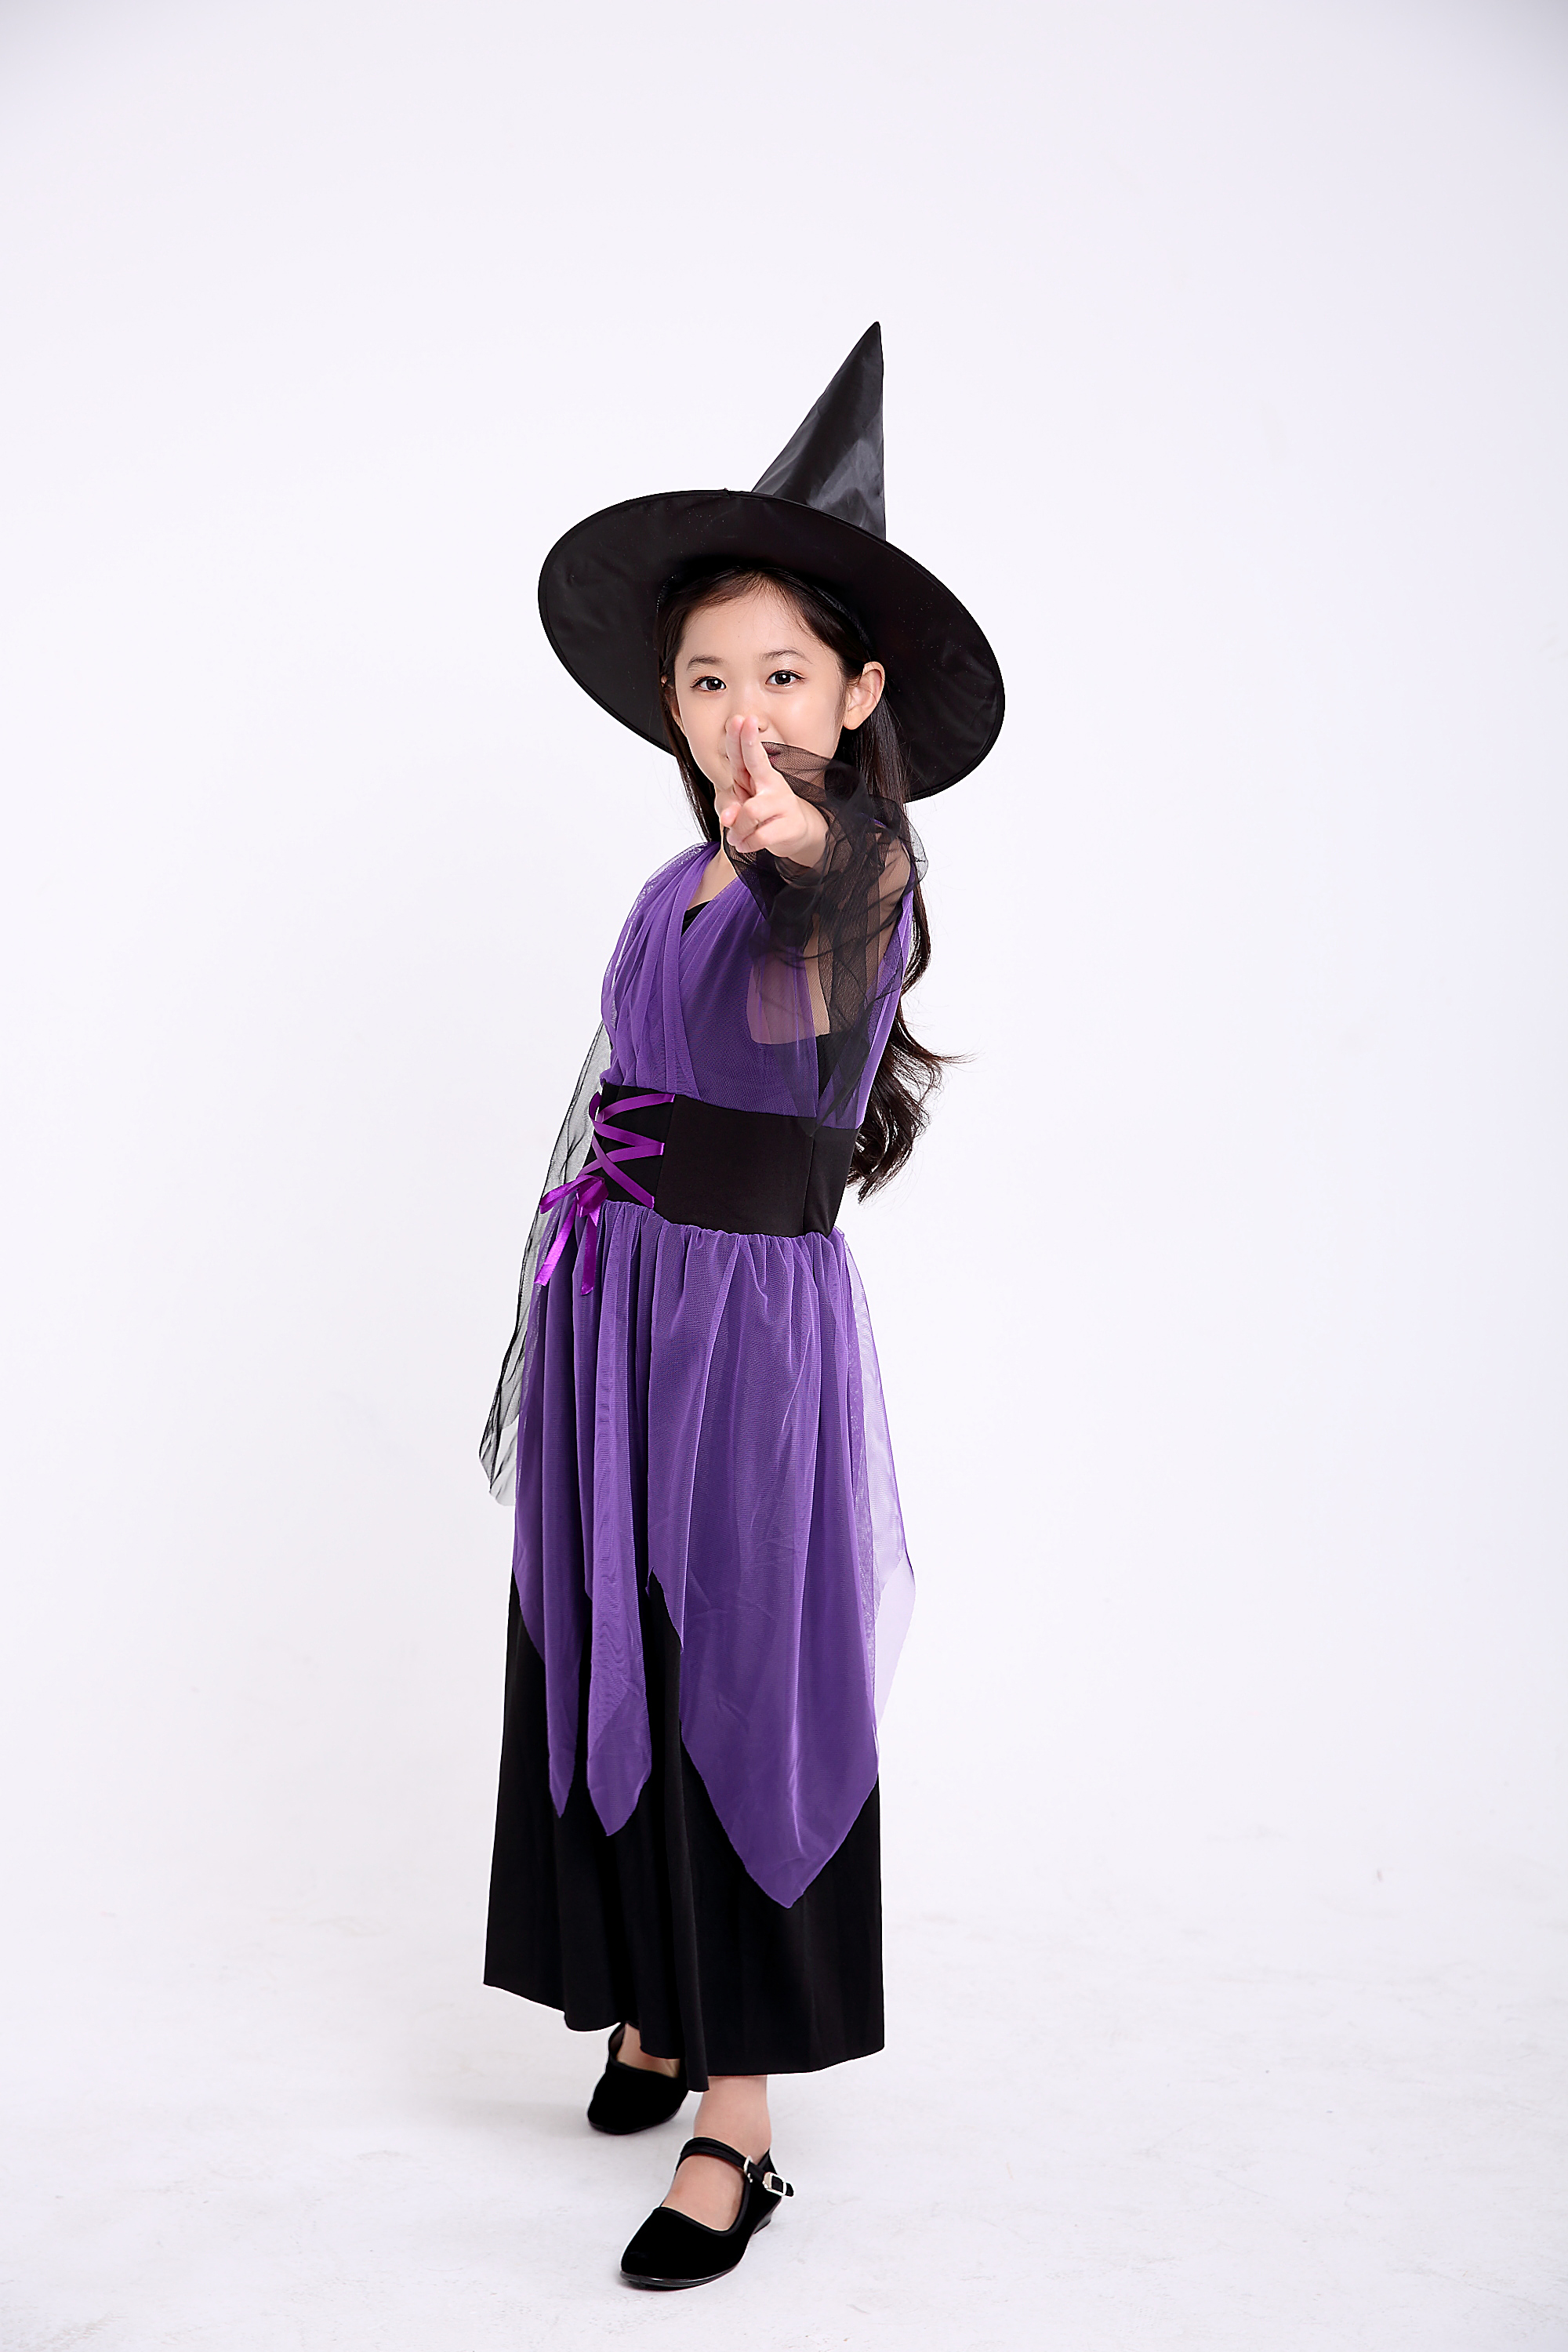 万圣节儿童女巫婆服装 幼儿动漫女童少儿codplay女孩女巫 演出服